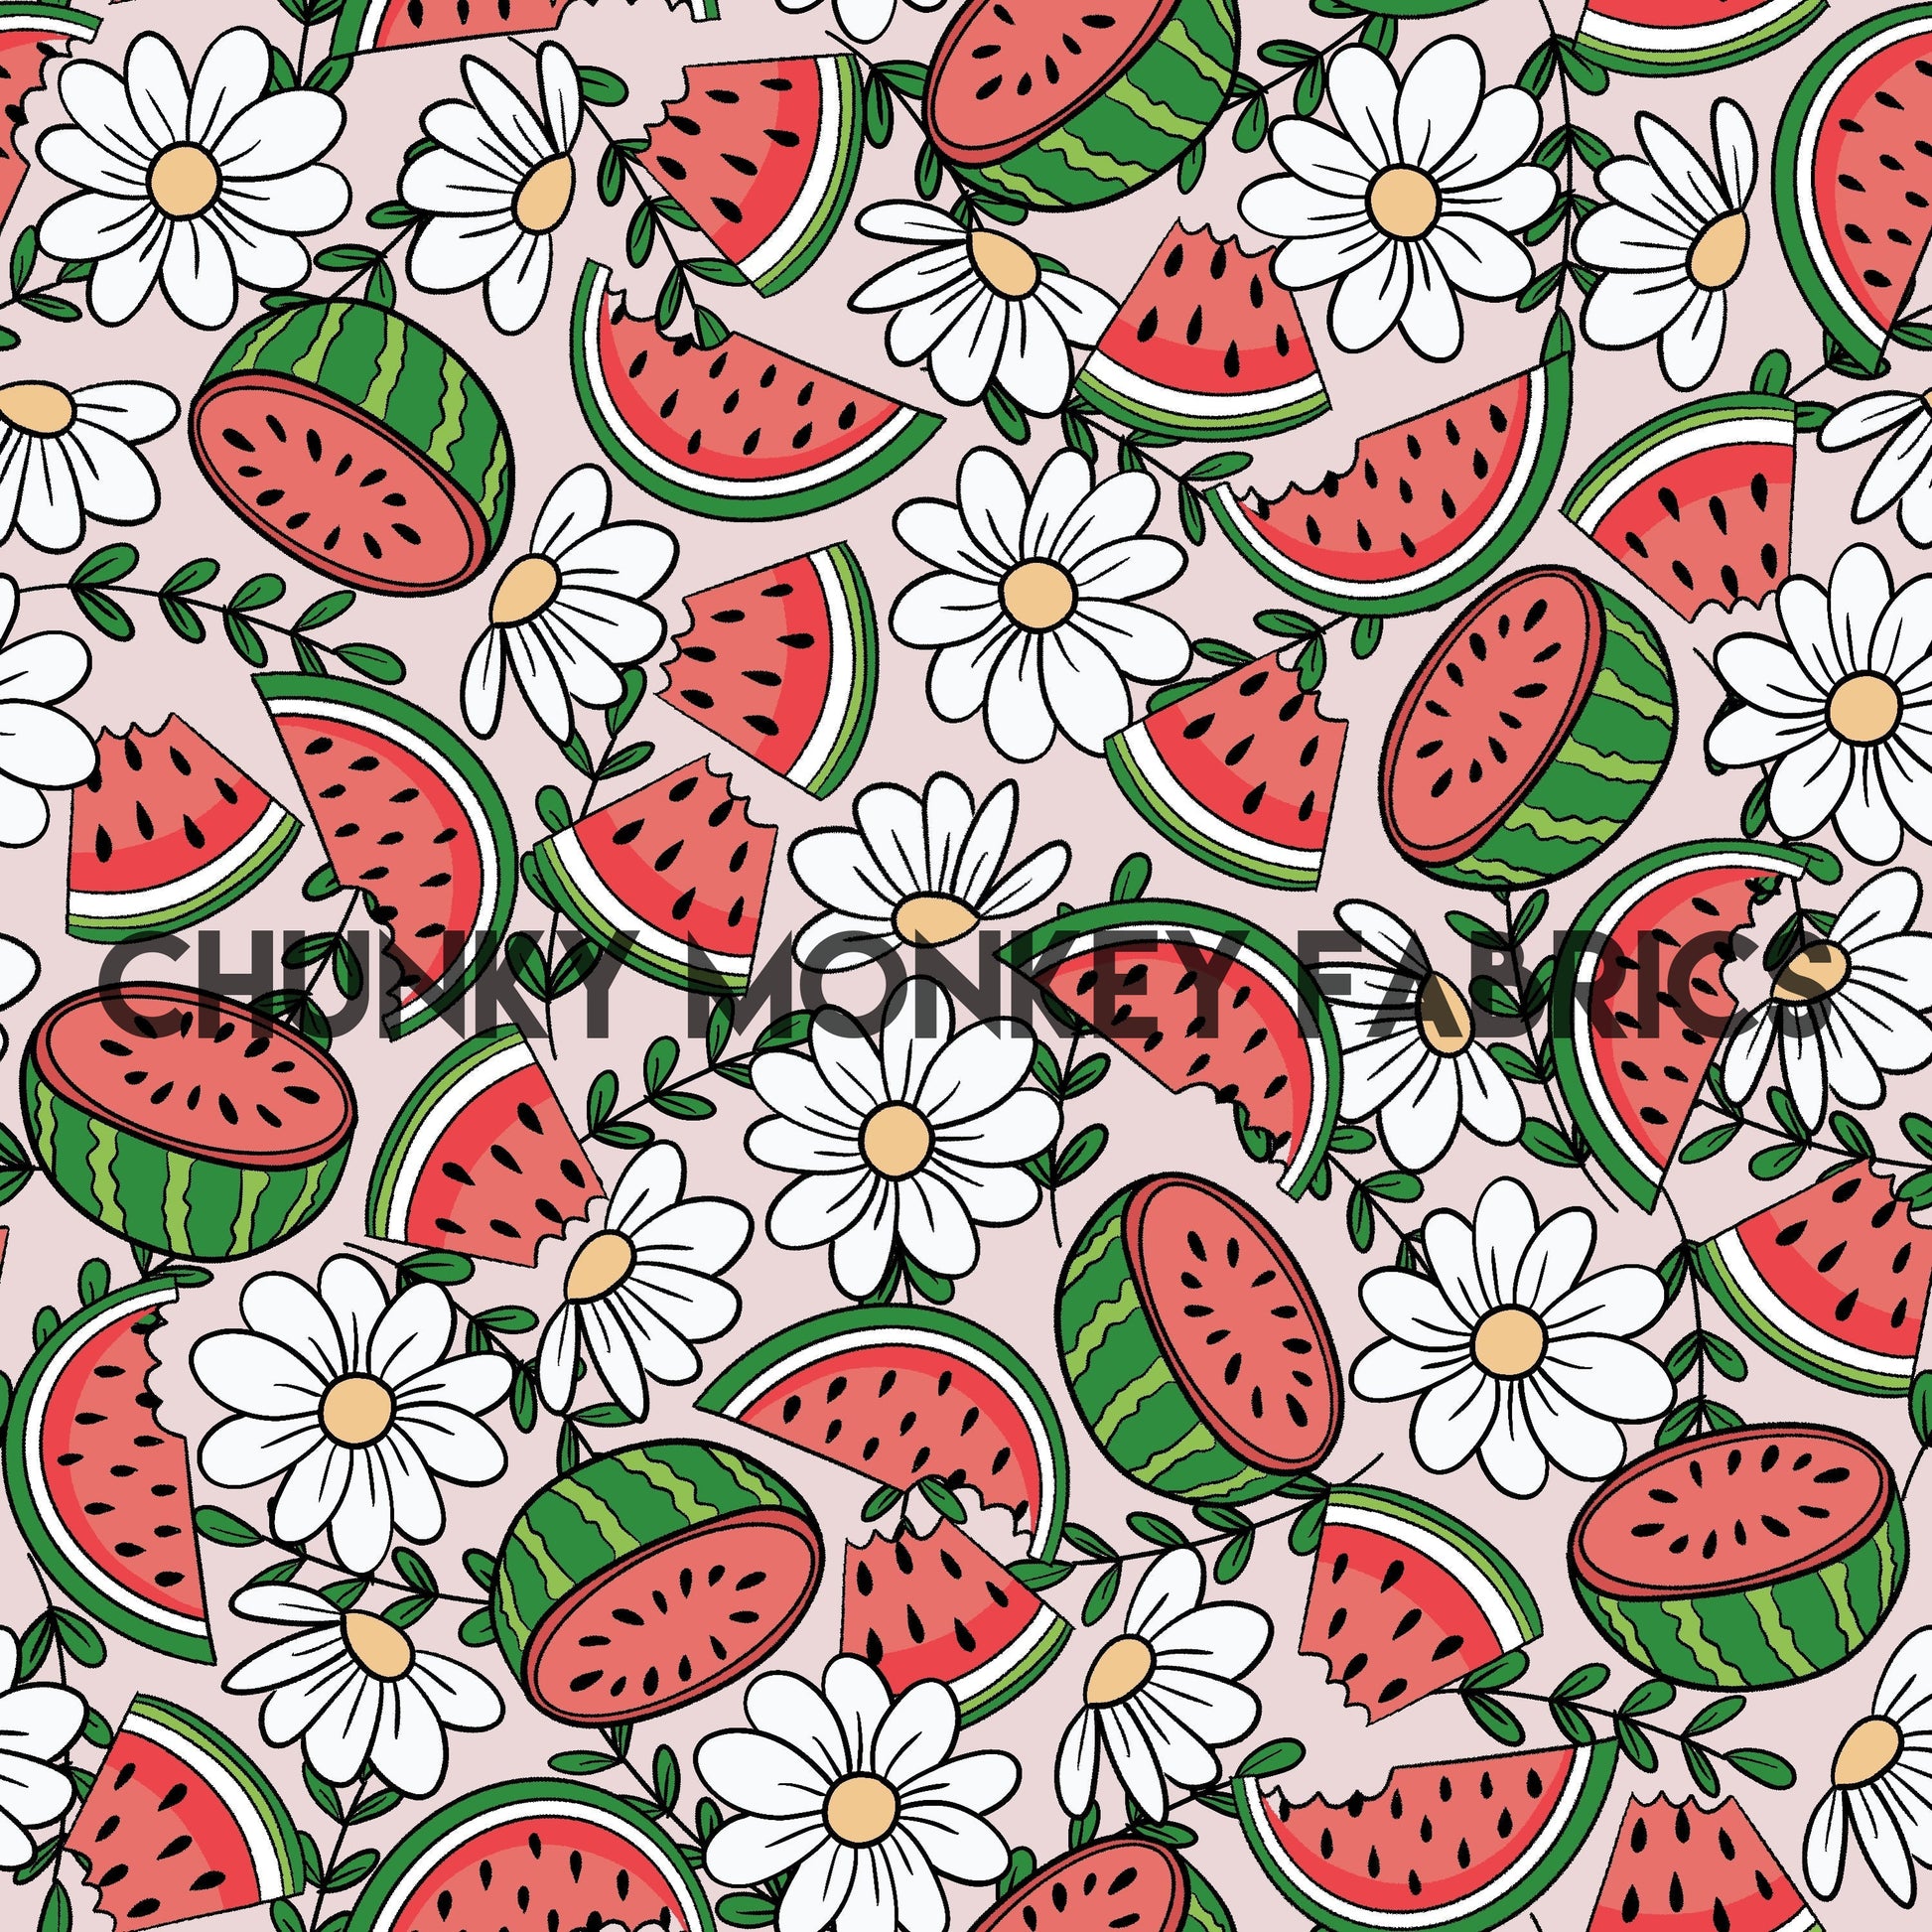 Amaris Richards Designs Watermelon Floral